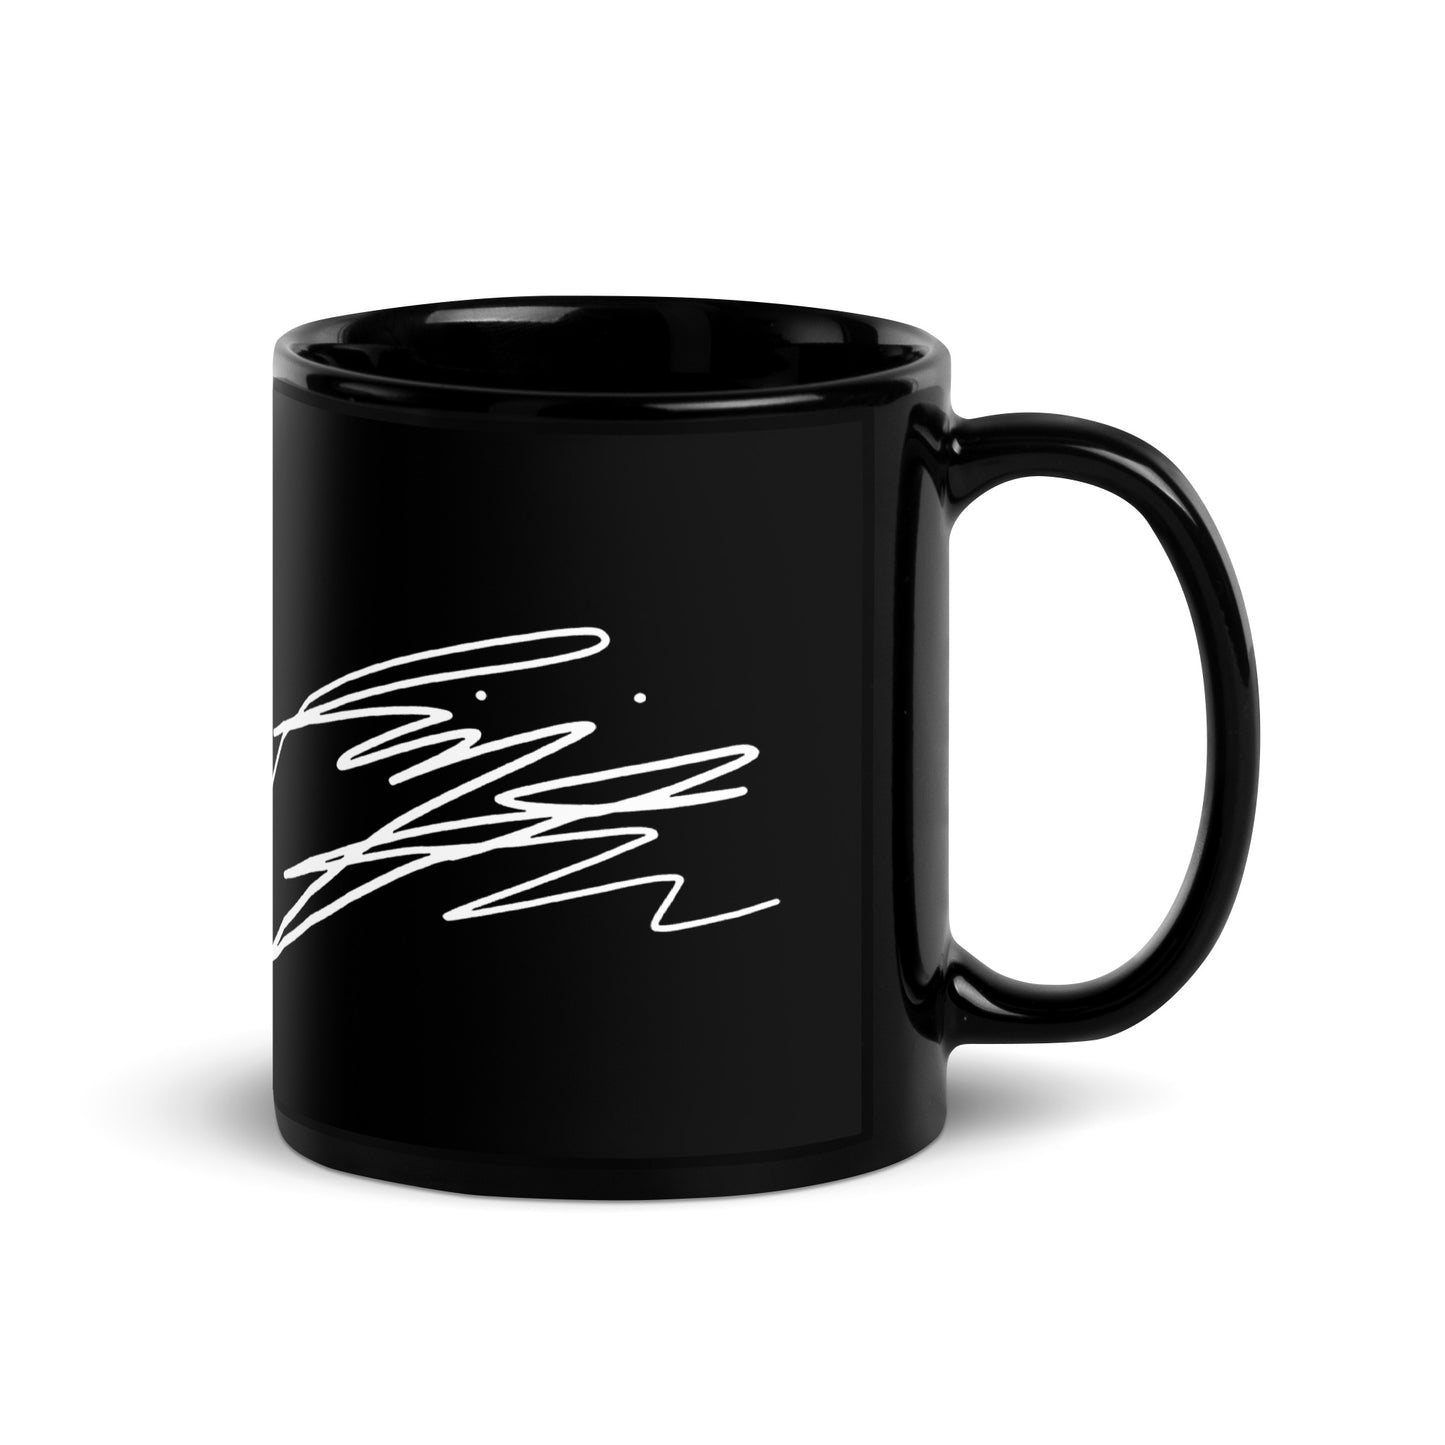 BTS RM, Kim Nam-joon Autograph Ceramic Mug